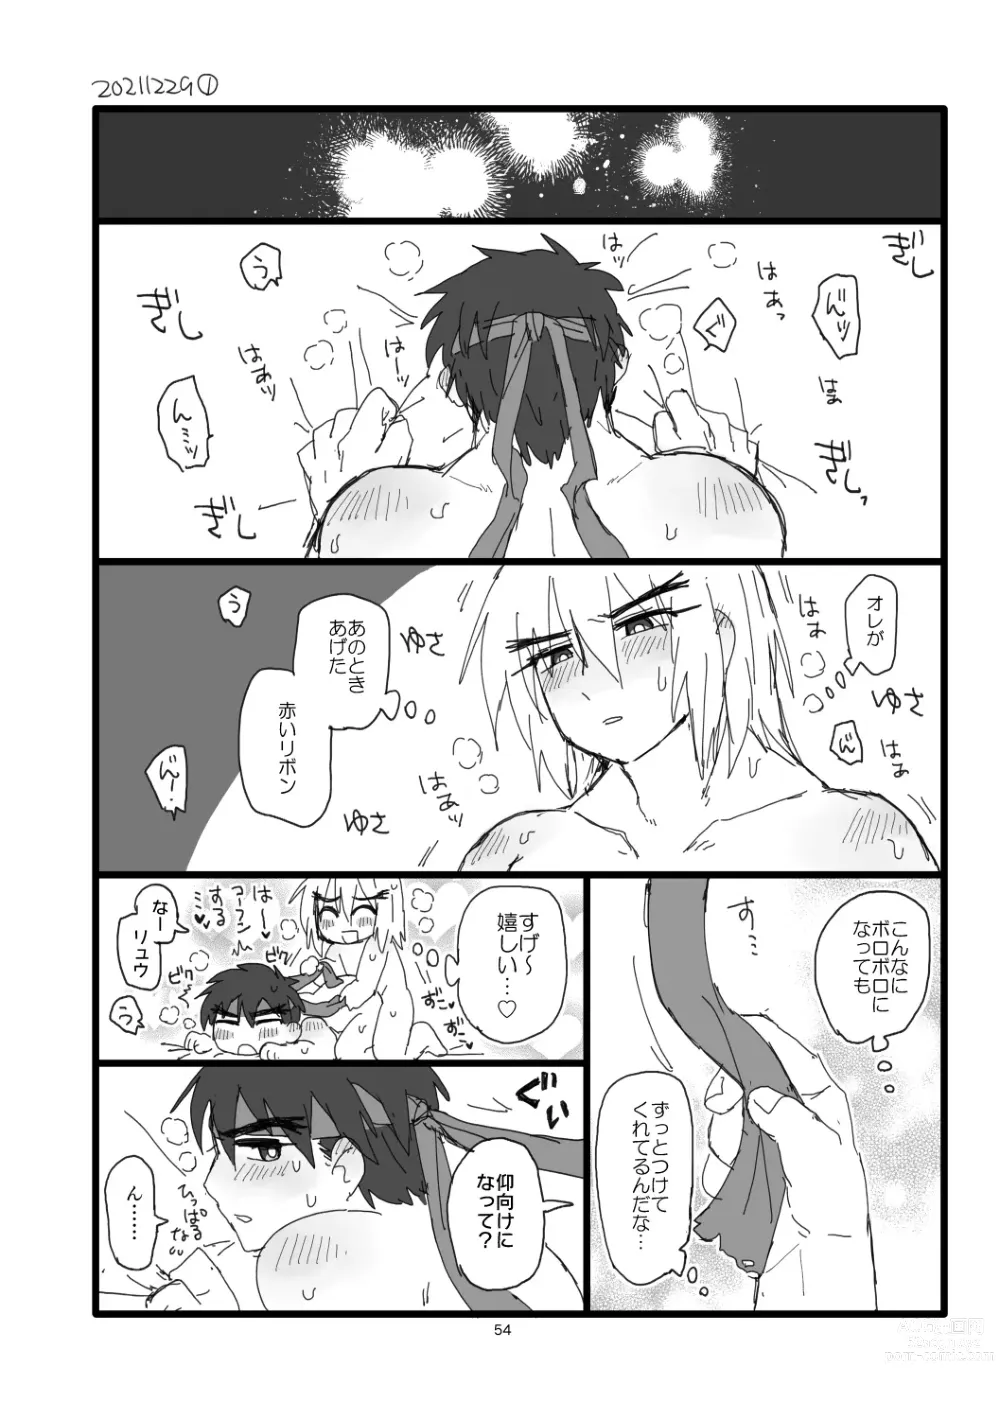 Page 53 of doujinshi Kobushi Kiss